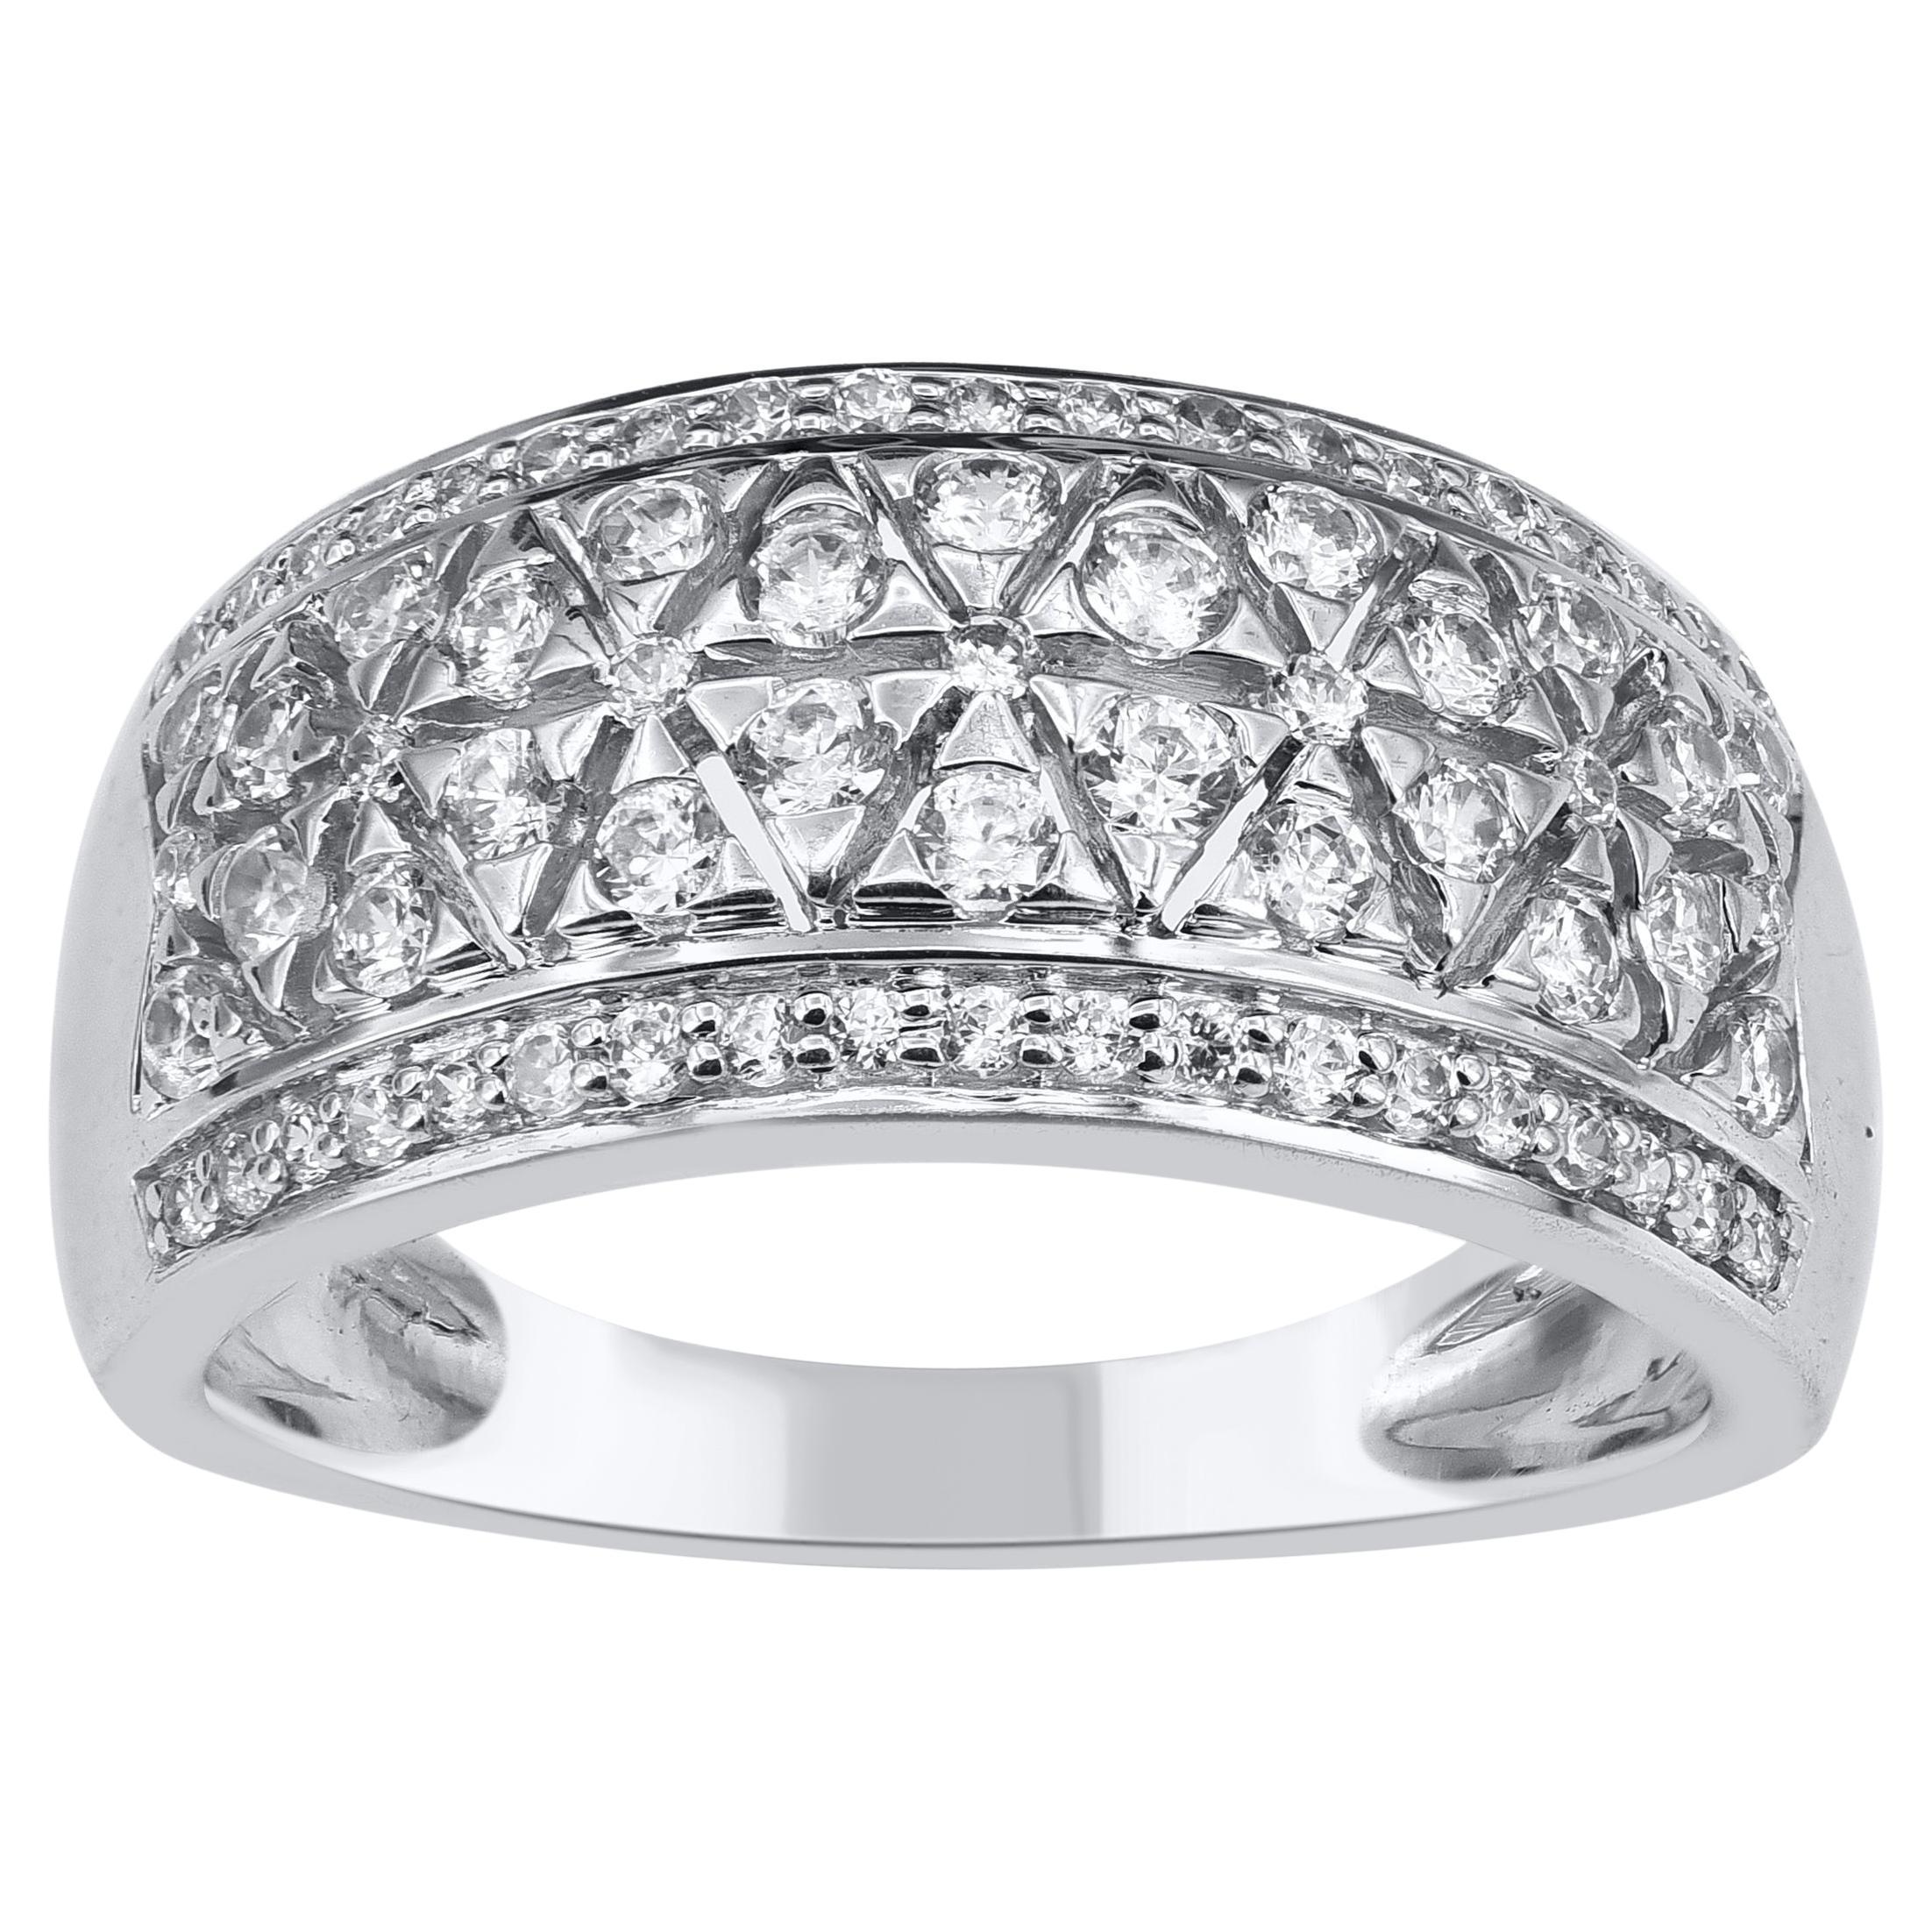 TJD 0.80 Carat Natural Diamond 14 Karat Gold Vintage-Style Wedding Band Ring